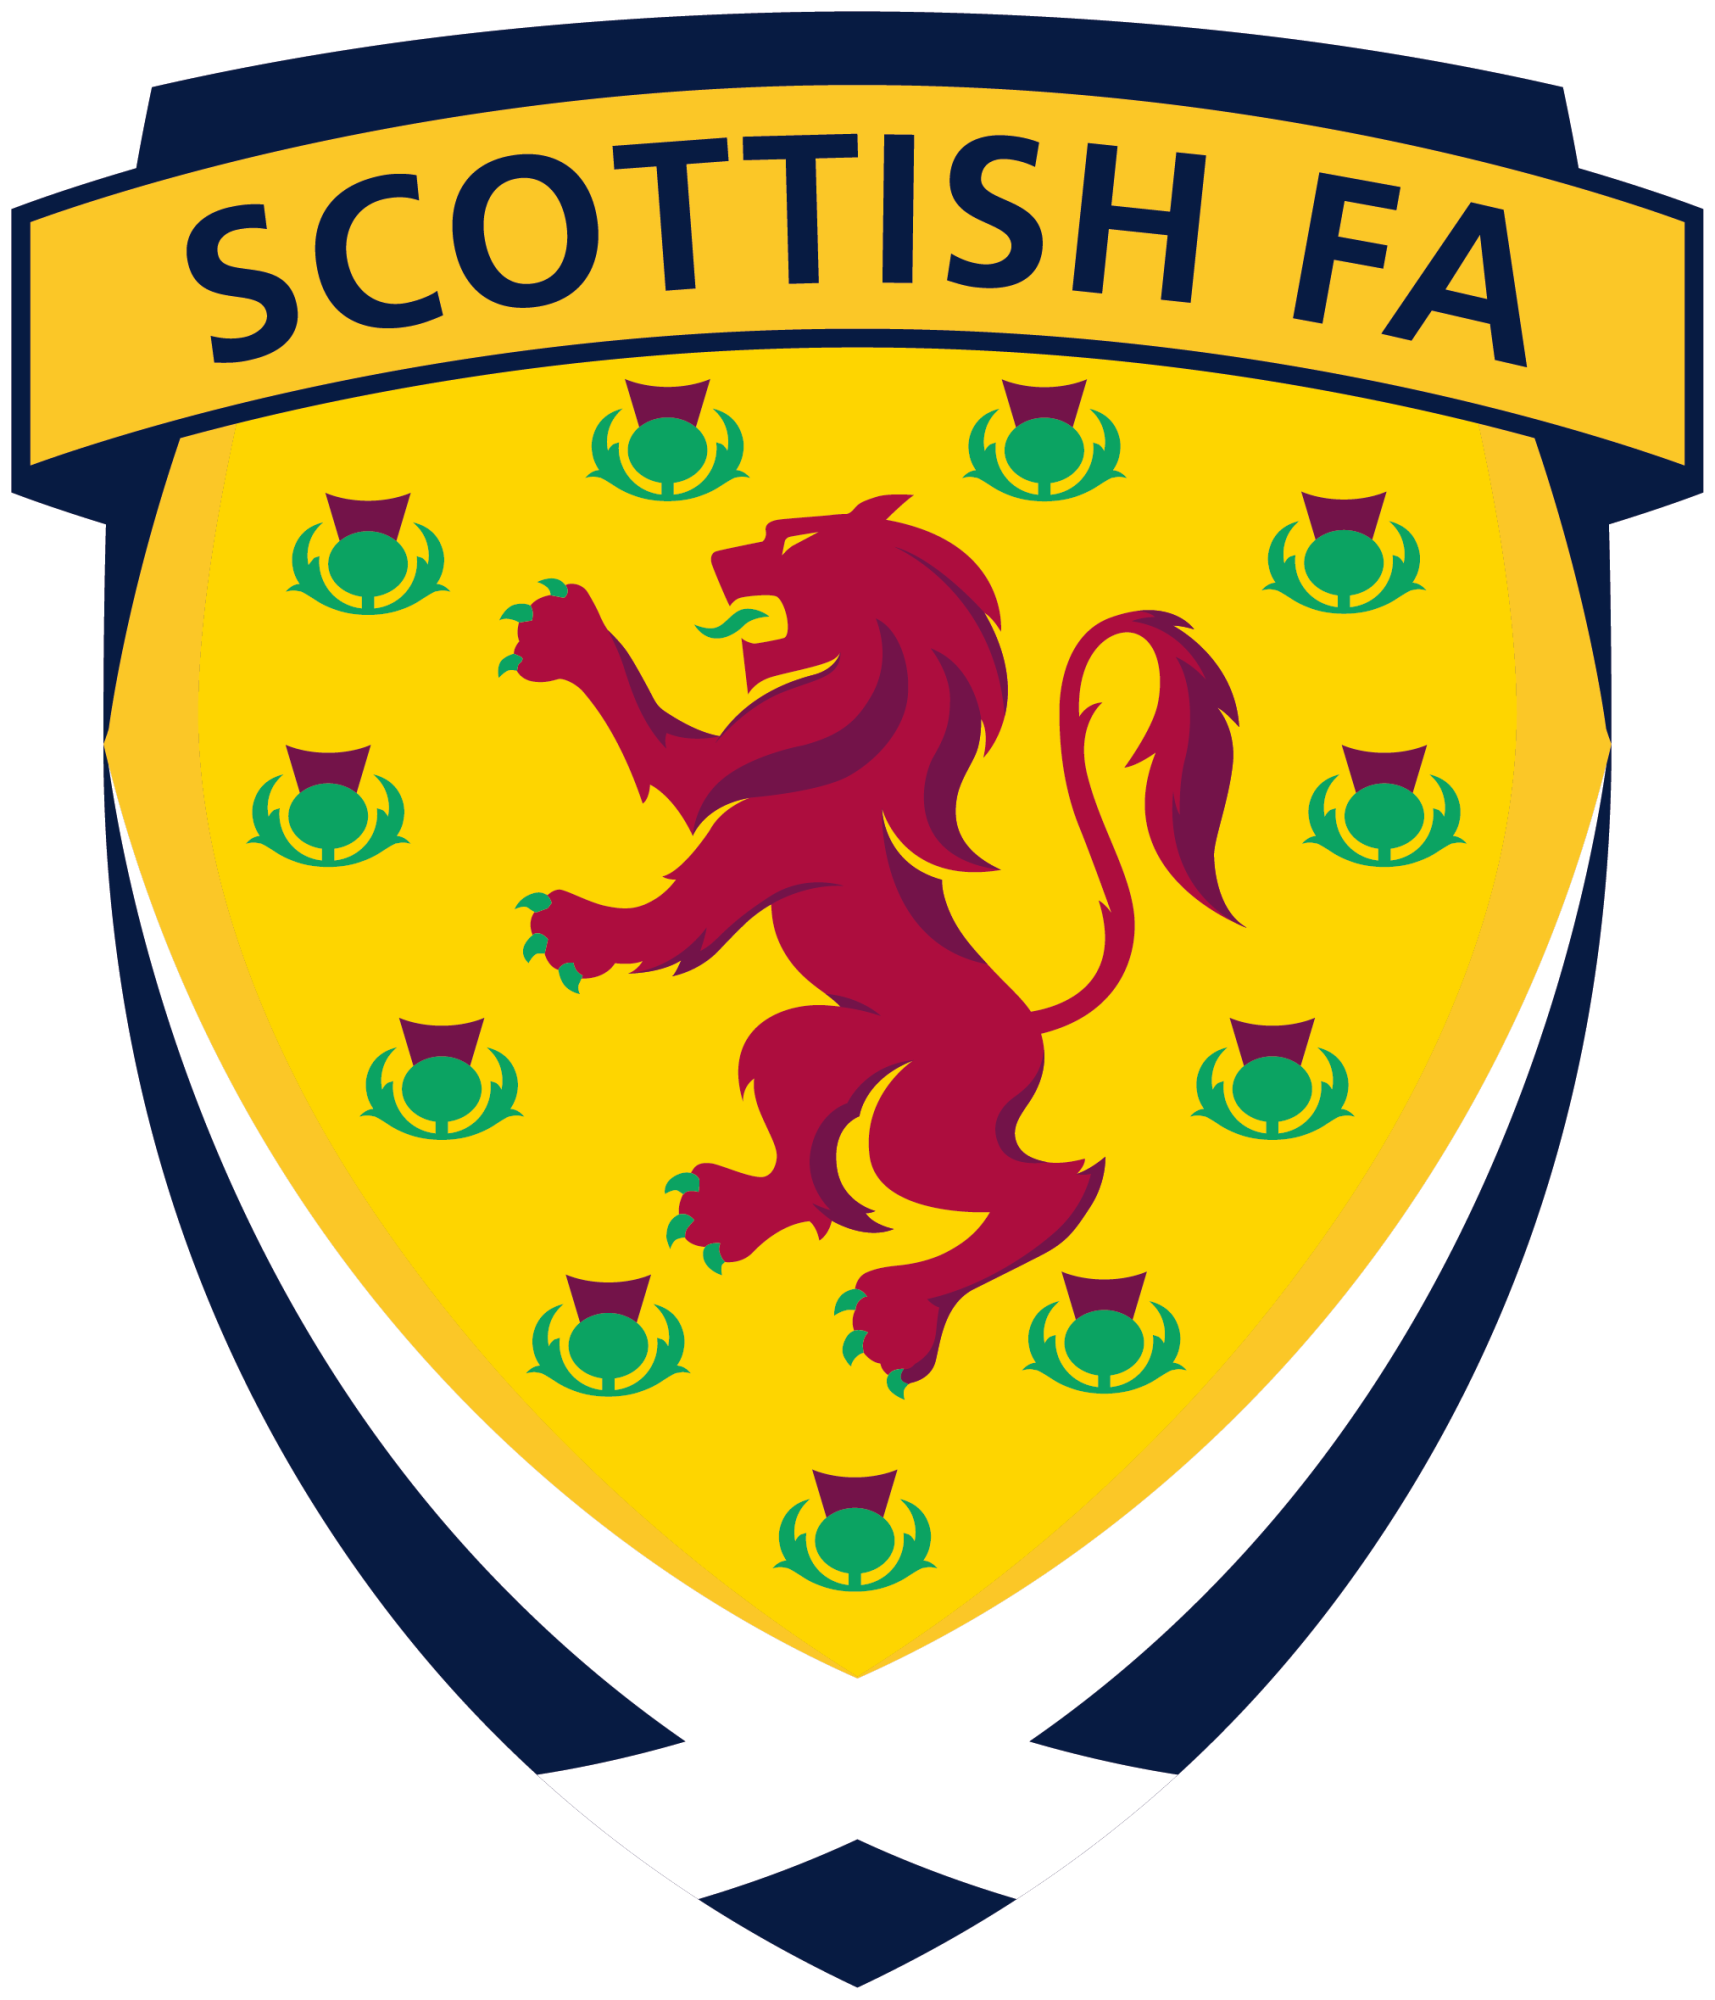 蘇格蘭足球總會(蘇格蘭足球協會)